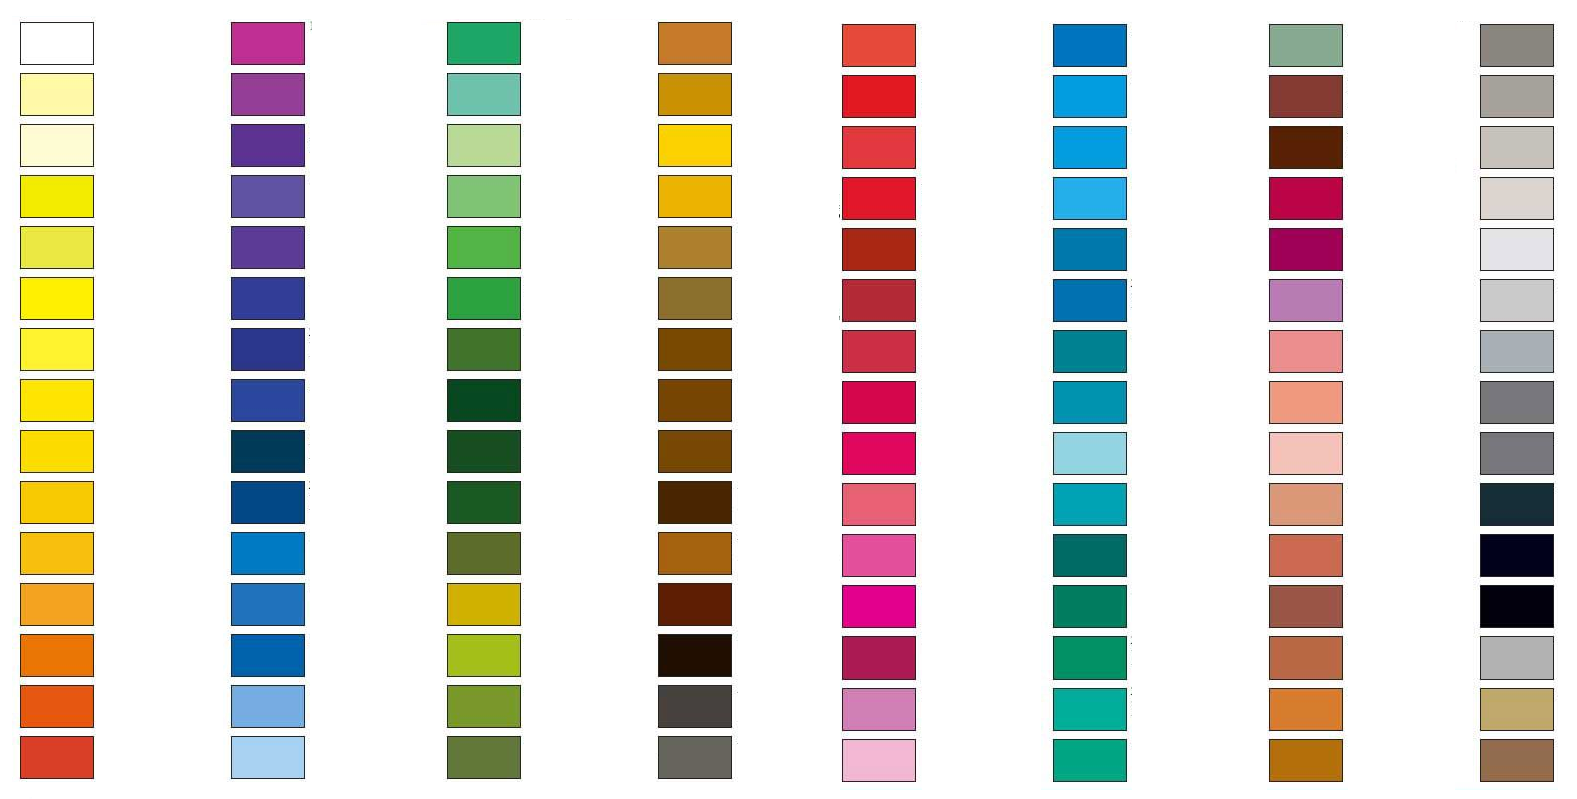 prismacolor-polychromos-colour-comparison-chart-prismacolor-chart-images